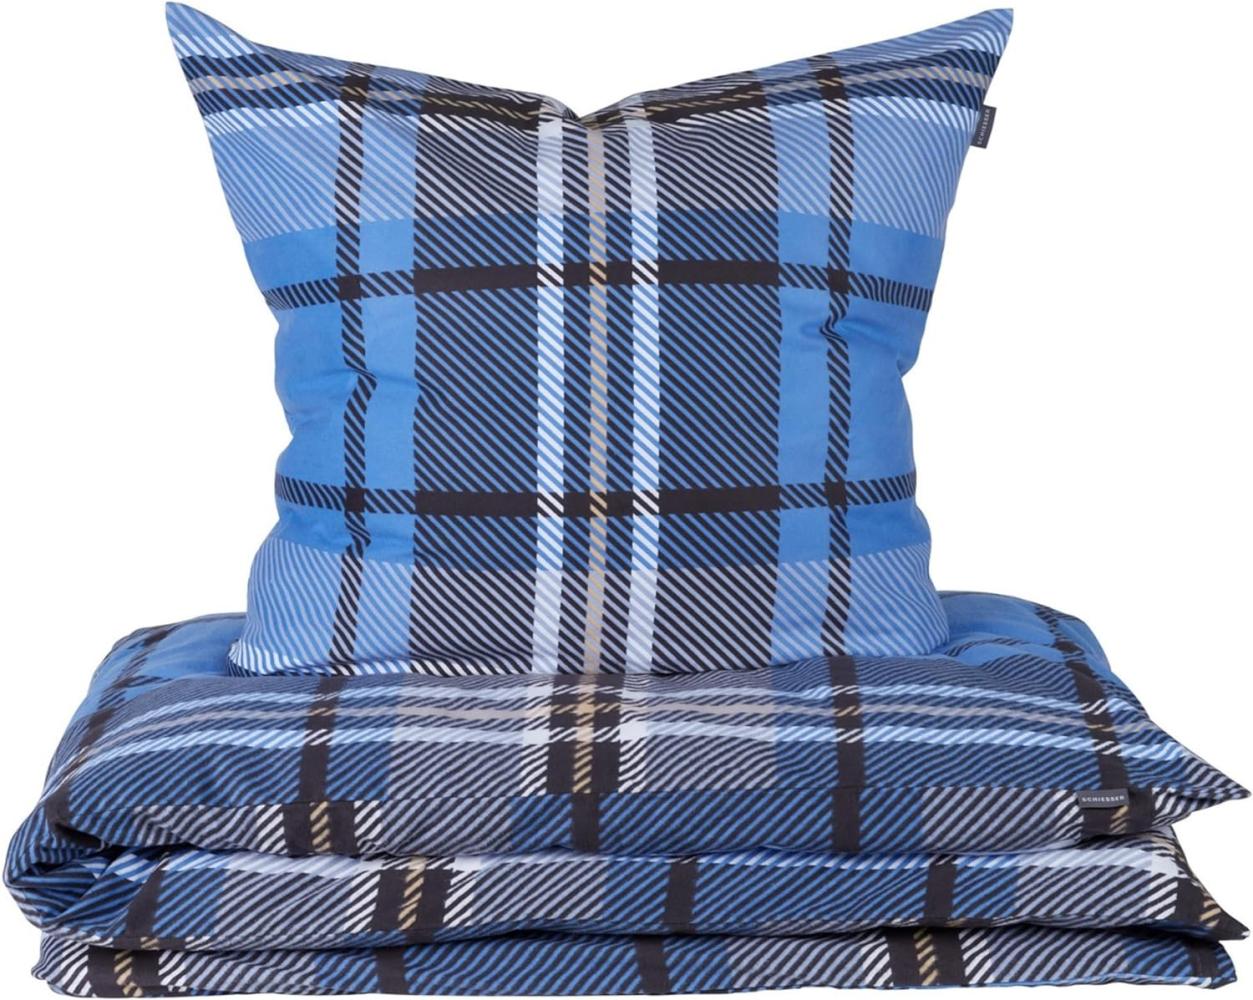 Schiesser Feinbiber Bettwäsche Set Borro aus weicher, wärmender Baumwolle, Farbe:Blau und Grau, Größe:155 cm x 220 cm Bild 1